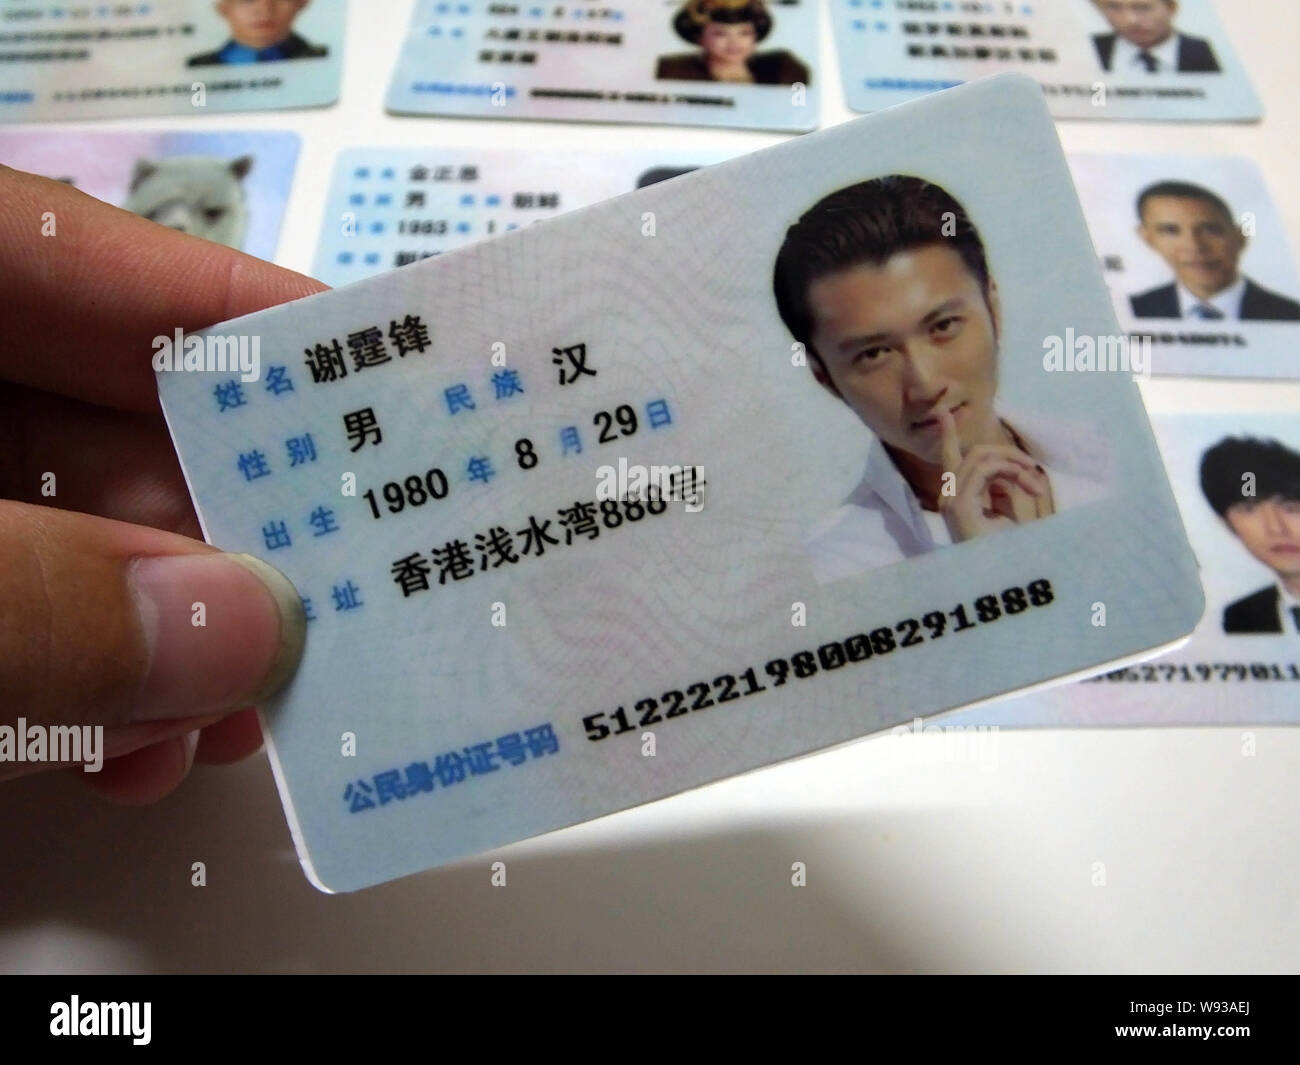 A man shows a fake Chinese ID card of Hong Kong singer and actor Nicholas  Tse